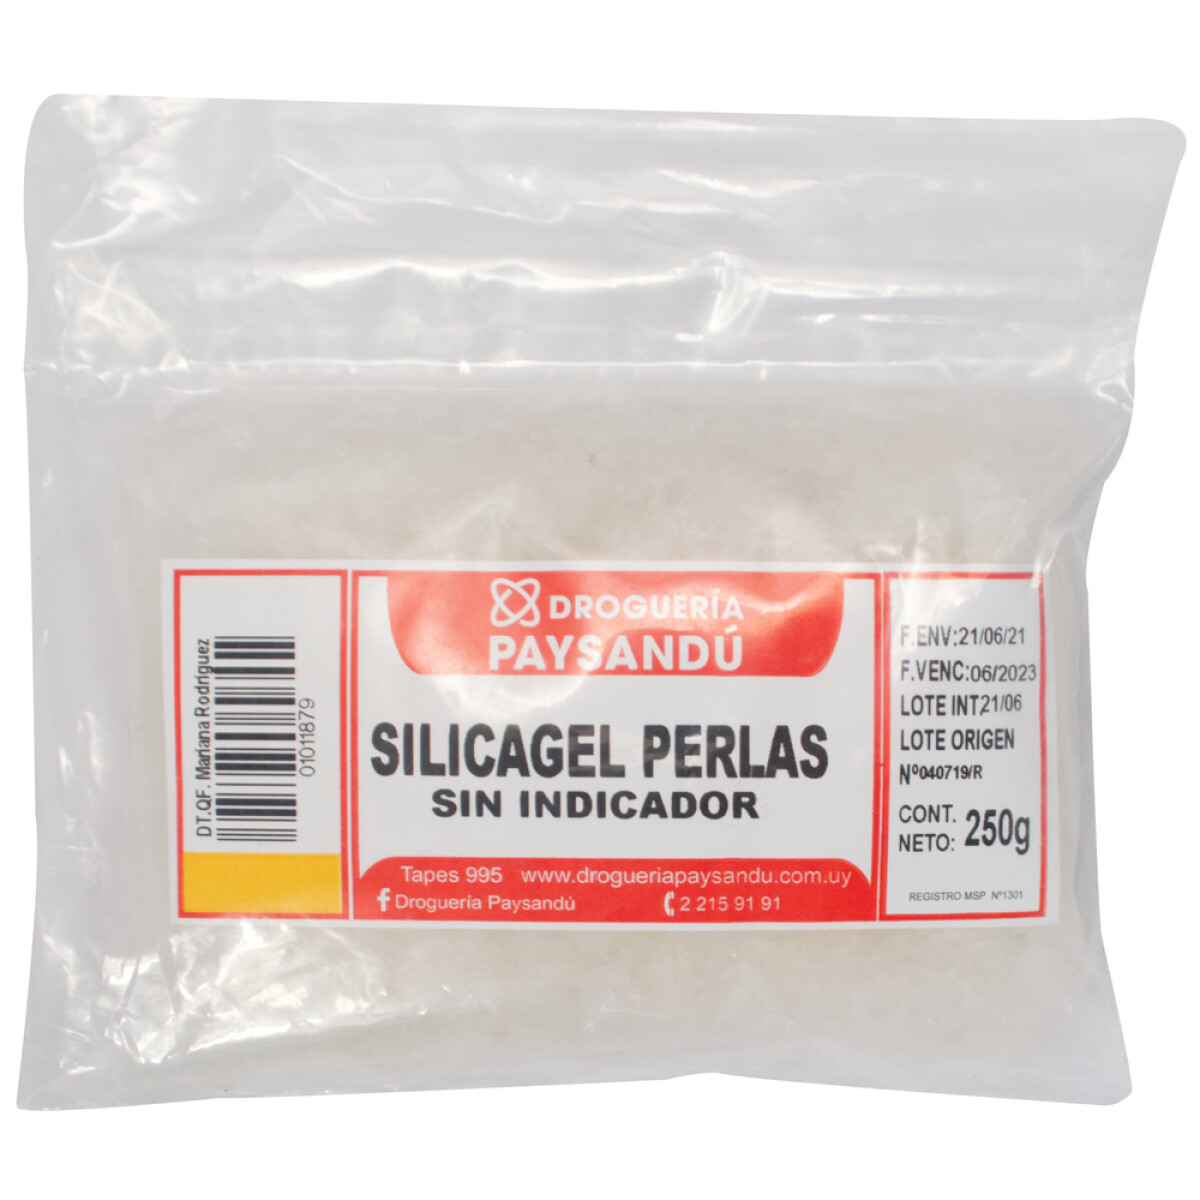 Silicagel Perlas Absorbente sin Indicador - 250 g 